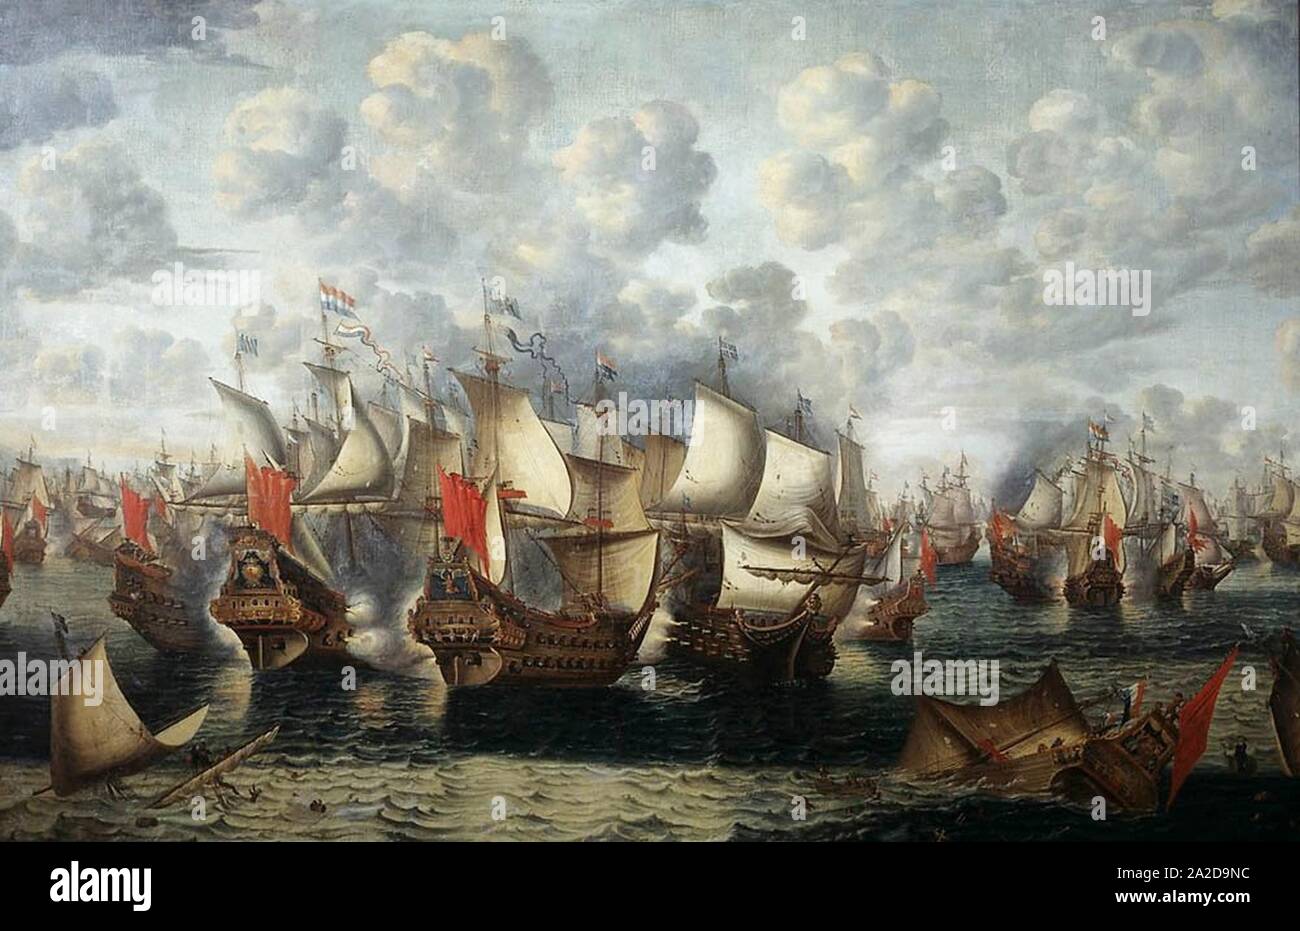 Eerste fase van de Zeeslag in de Sont - First phase of the Battle of the Sound - November 8 1658 (Jan Abrahamsz Beerstraten, 1660). Stock Photo